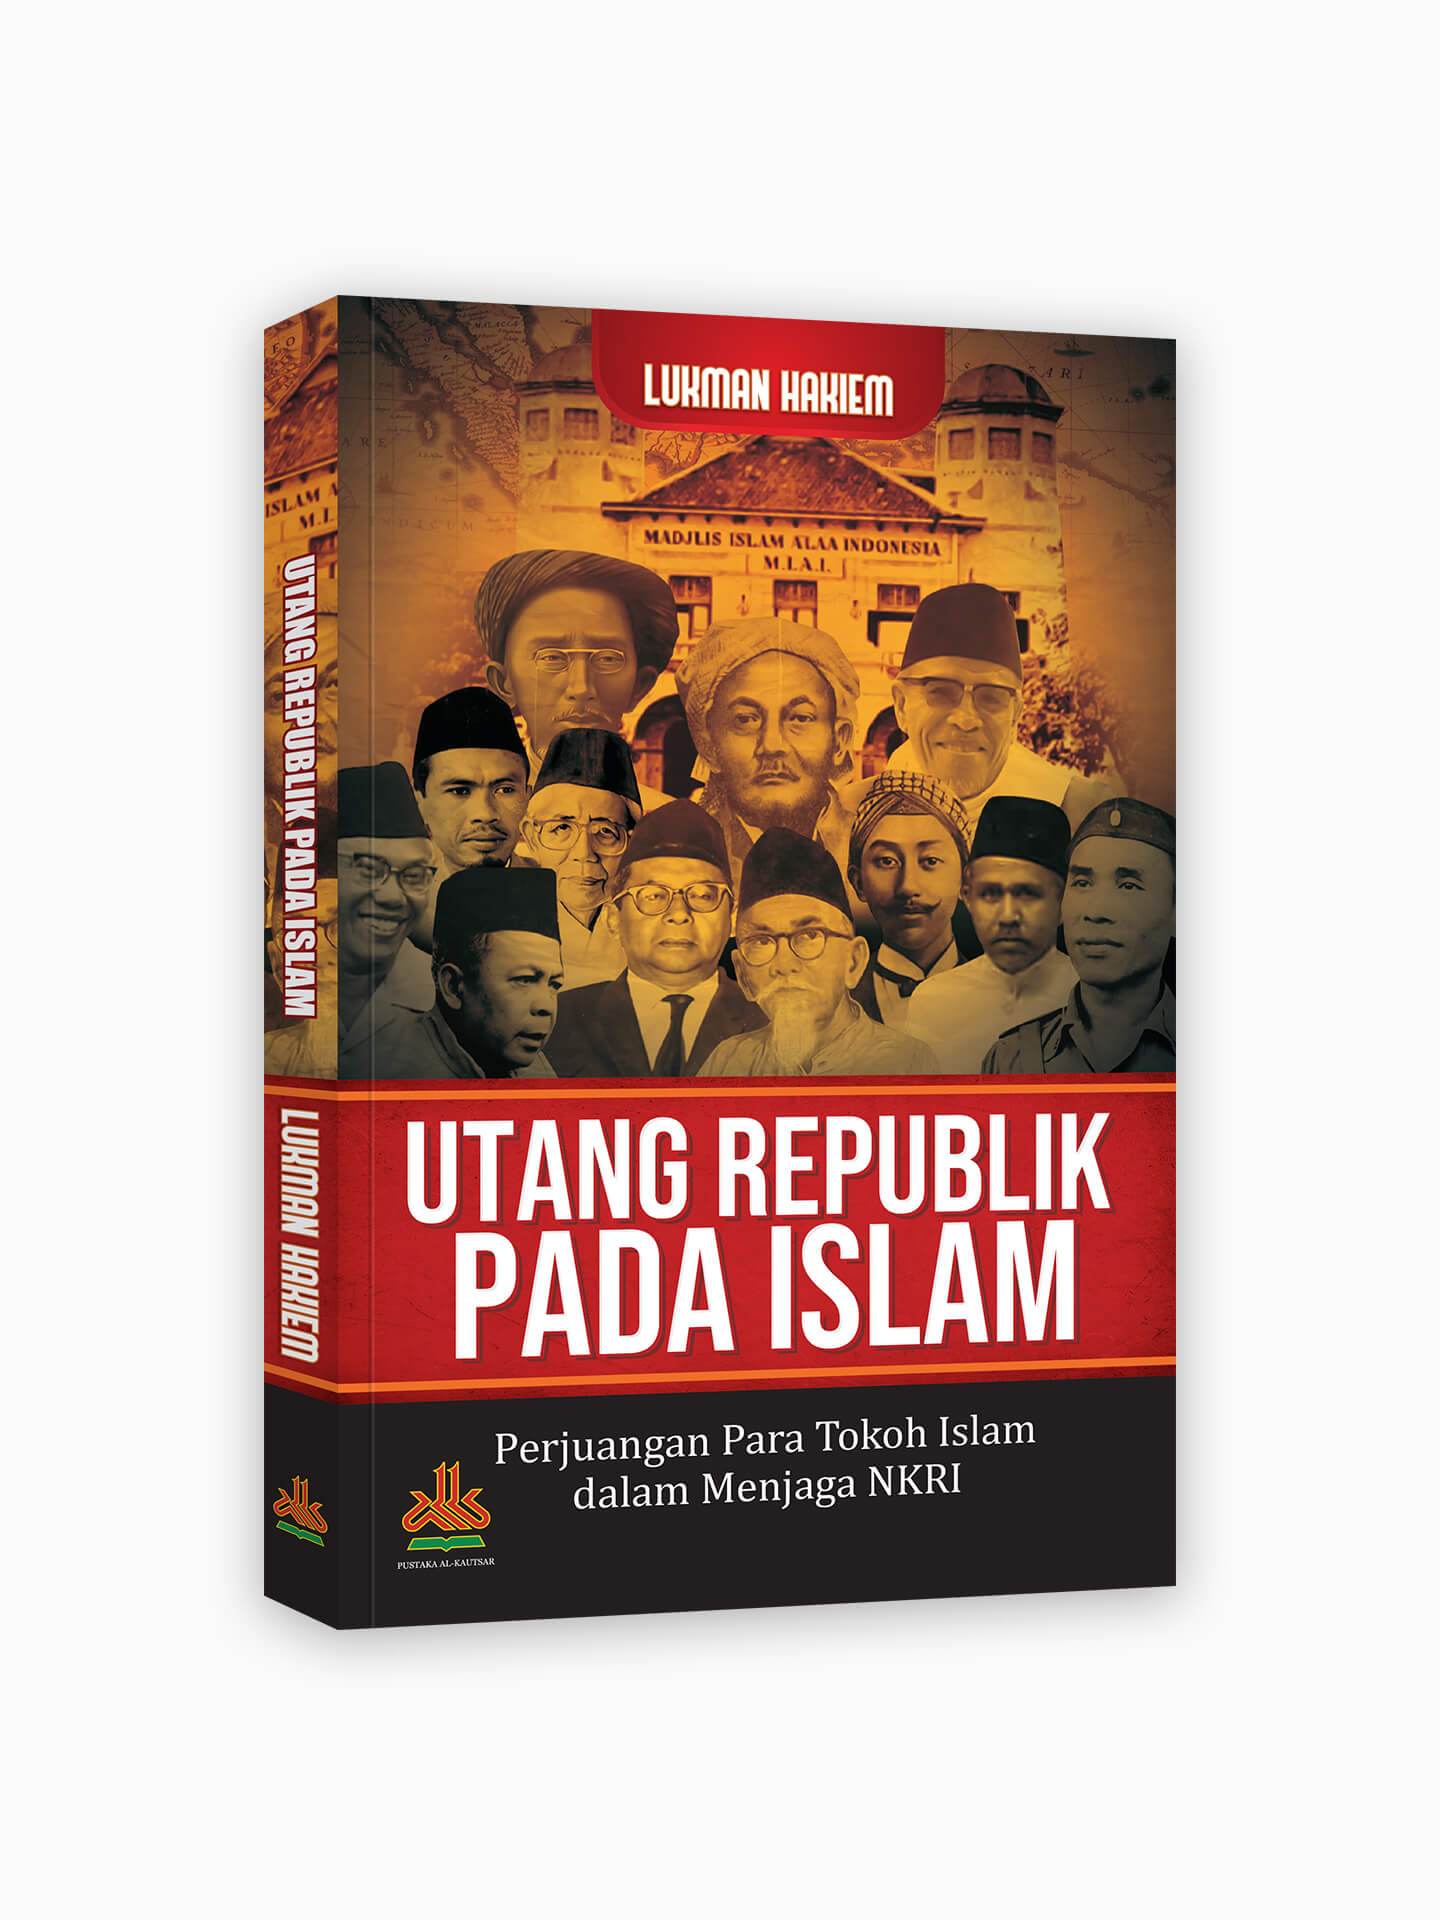 Utang Republik Pada Islam : Perjuangan Para Tokoh Islam dalam Menjaga NKRI